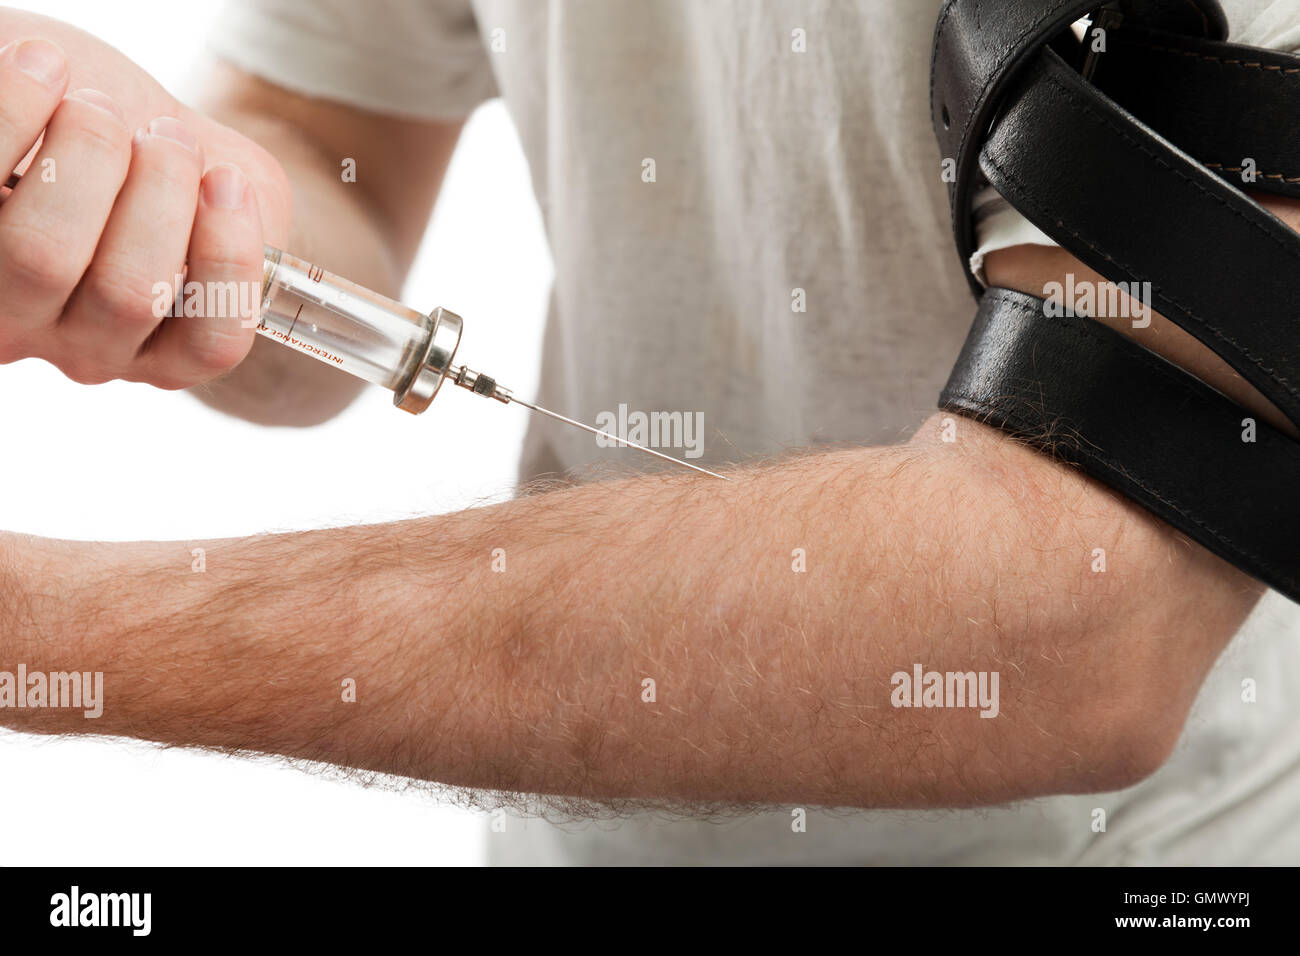 Addict injecting syringe Stock Photo